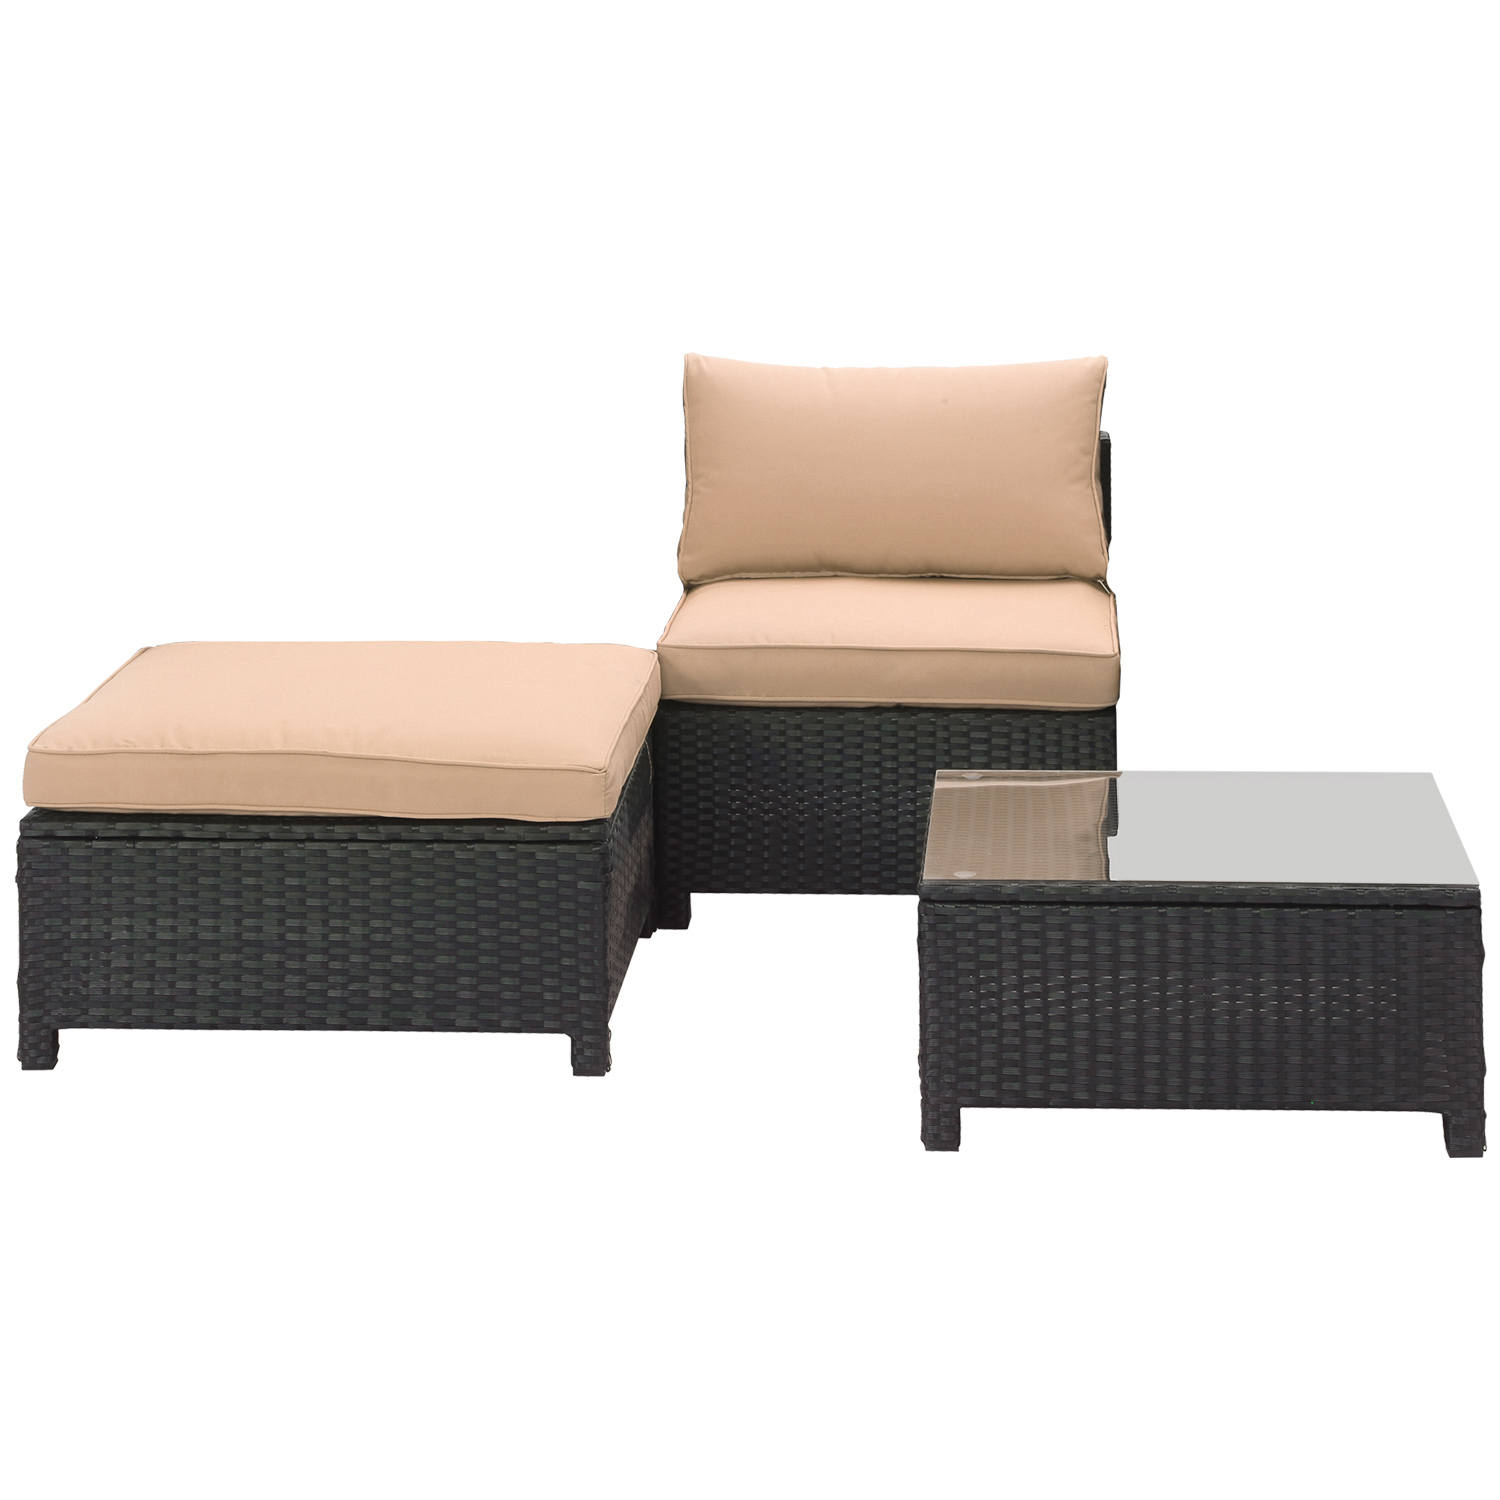 Ainfox 3 Pcs Outdoor Patio Furniture Sofa Set Clearance, Khaki - image 1 of 5